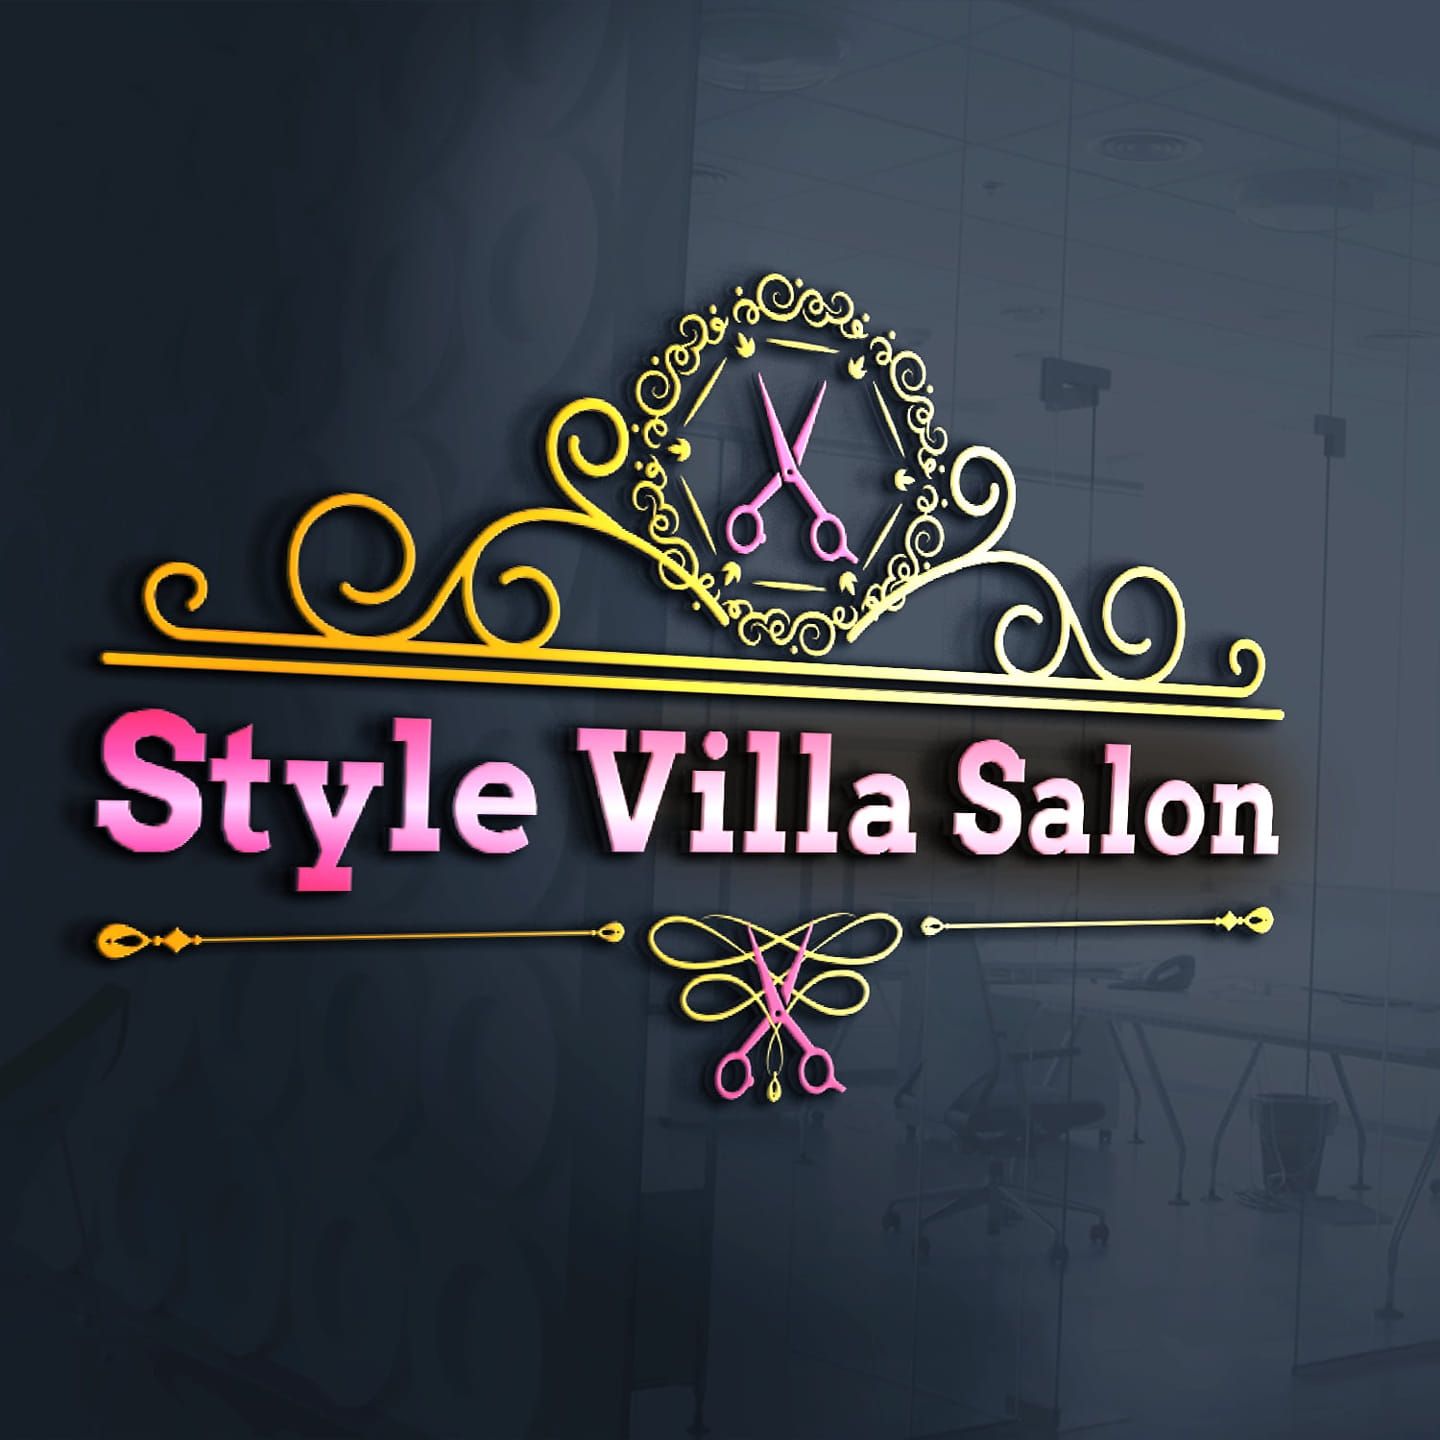 Style Villa Salon|Salon|Active Life